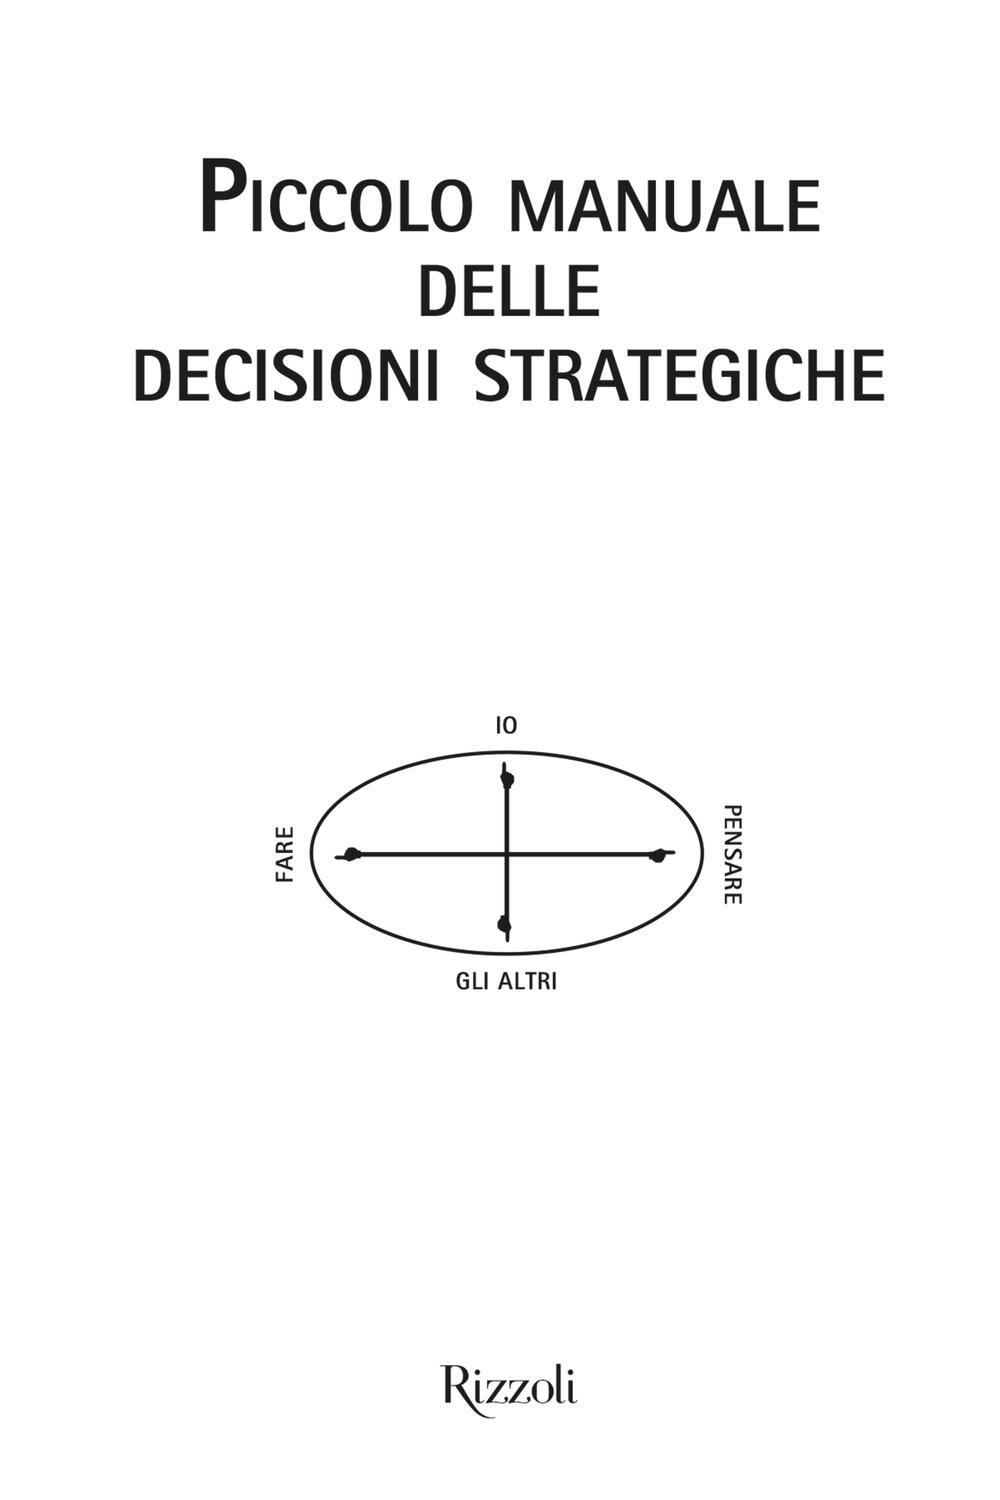 Piccolo manuale delle decisioni strategiche - Mikael Krogerus, Roman Tsch?ppeler,,